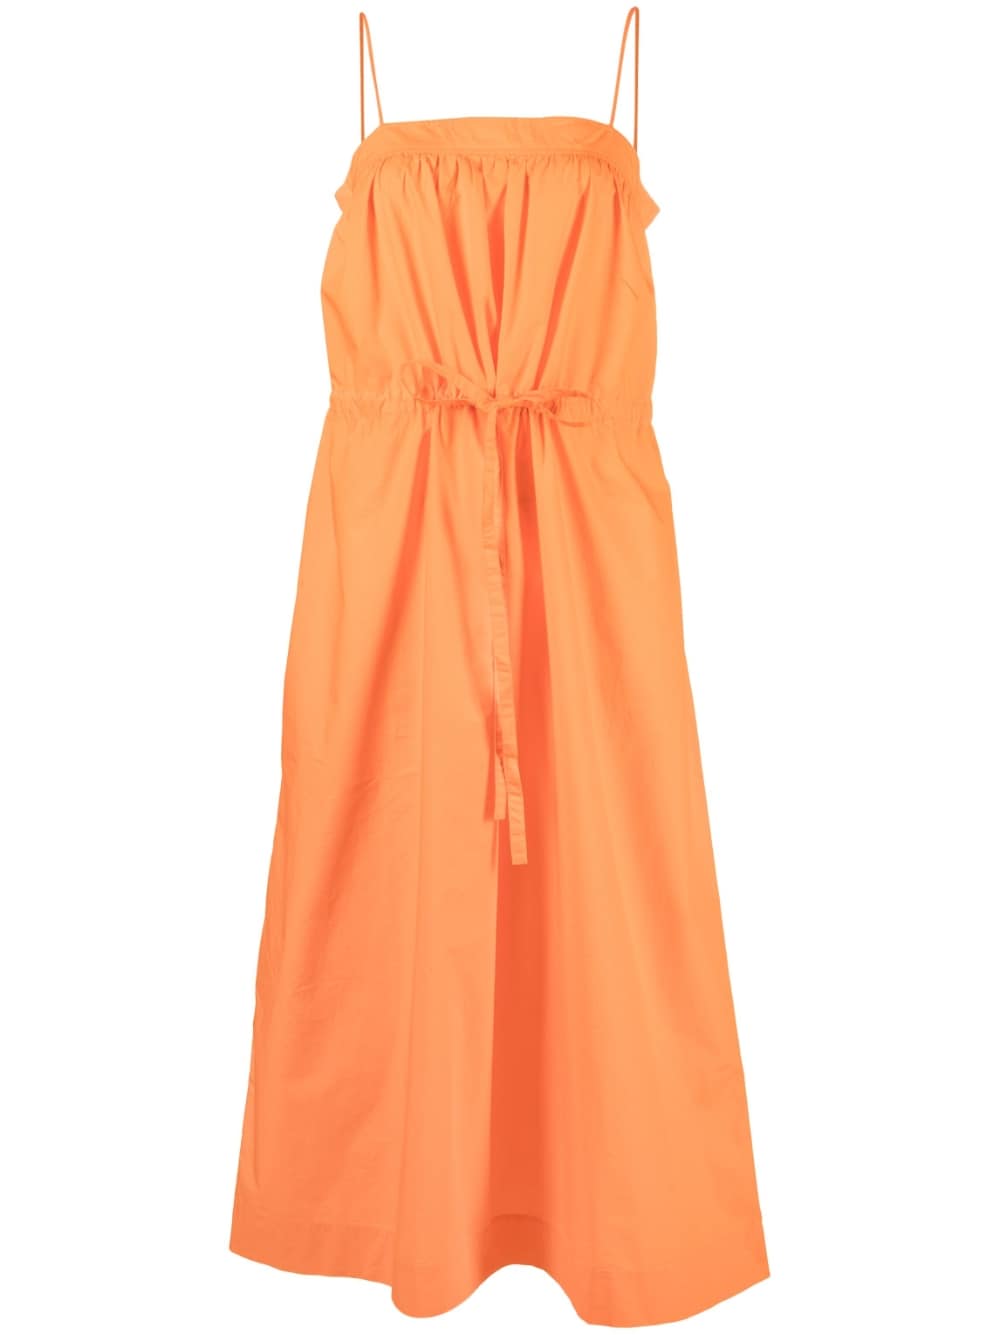 GANNI tie-front cotton dress - Orange